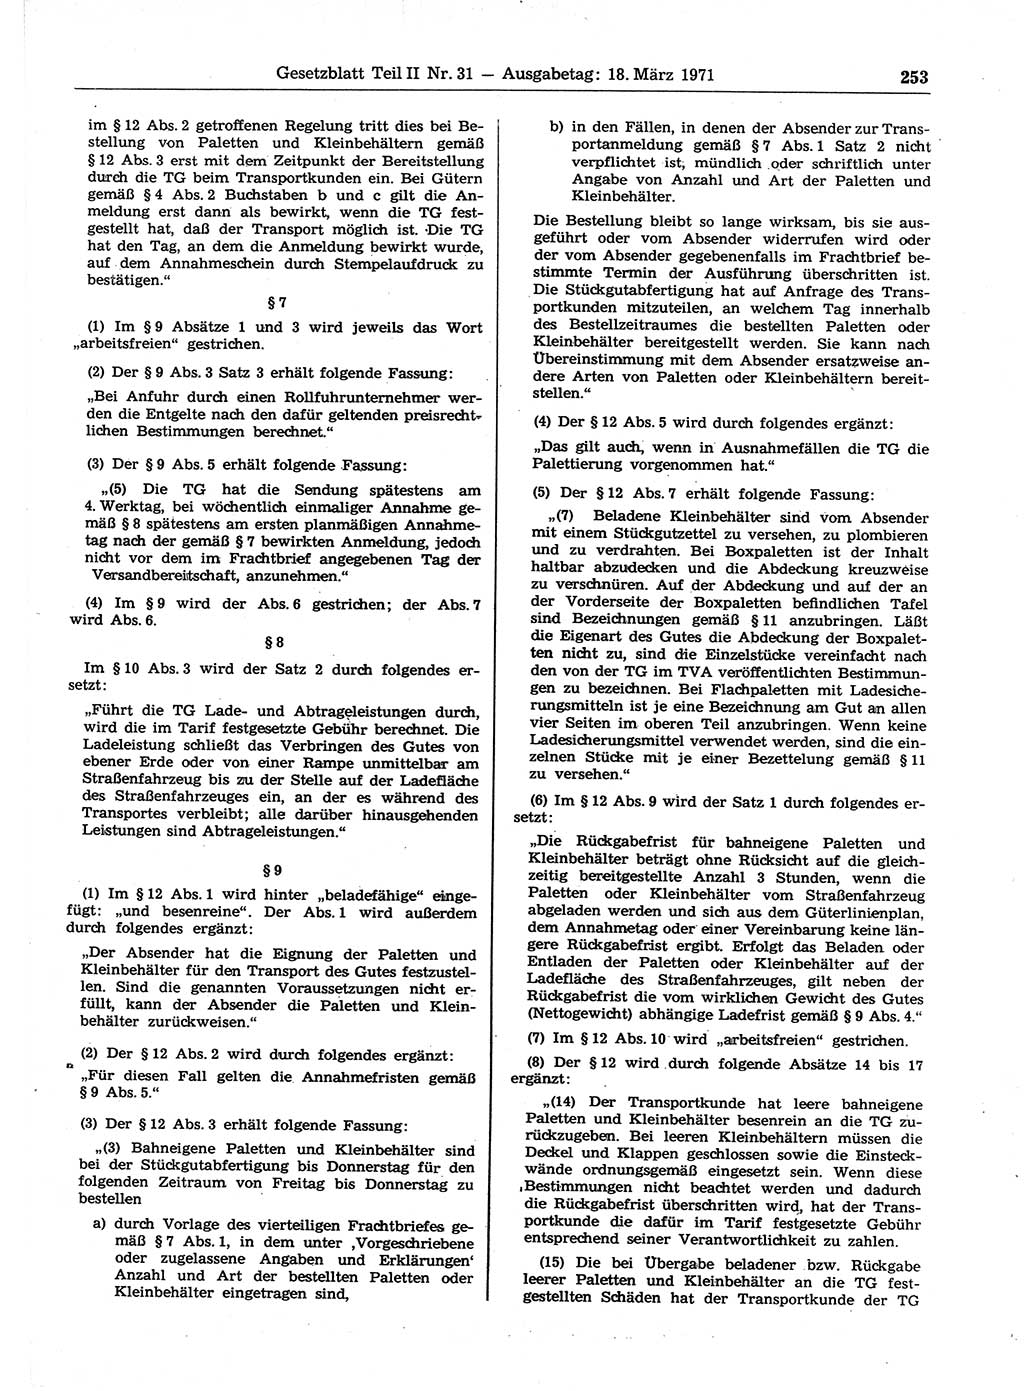 Gesetzblatt (GBl.) der Deutschen Demokratischen Republik (DDR) Teil ⅠⅠ 1971, Seite 253 (GBl. DDR ⅠⅠ 1971, S. 253)